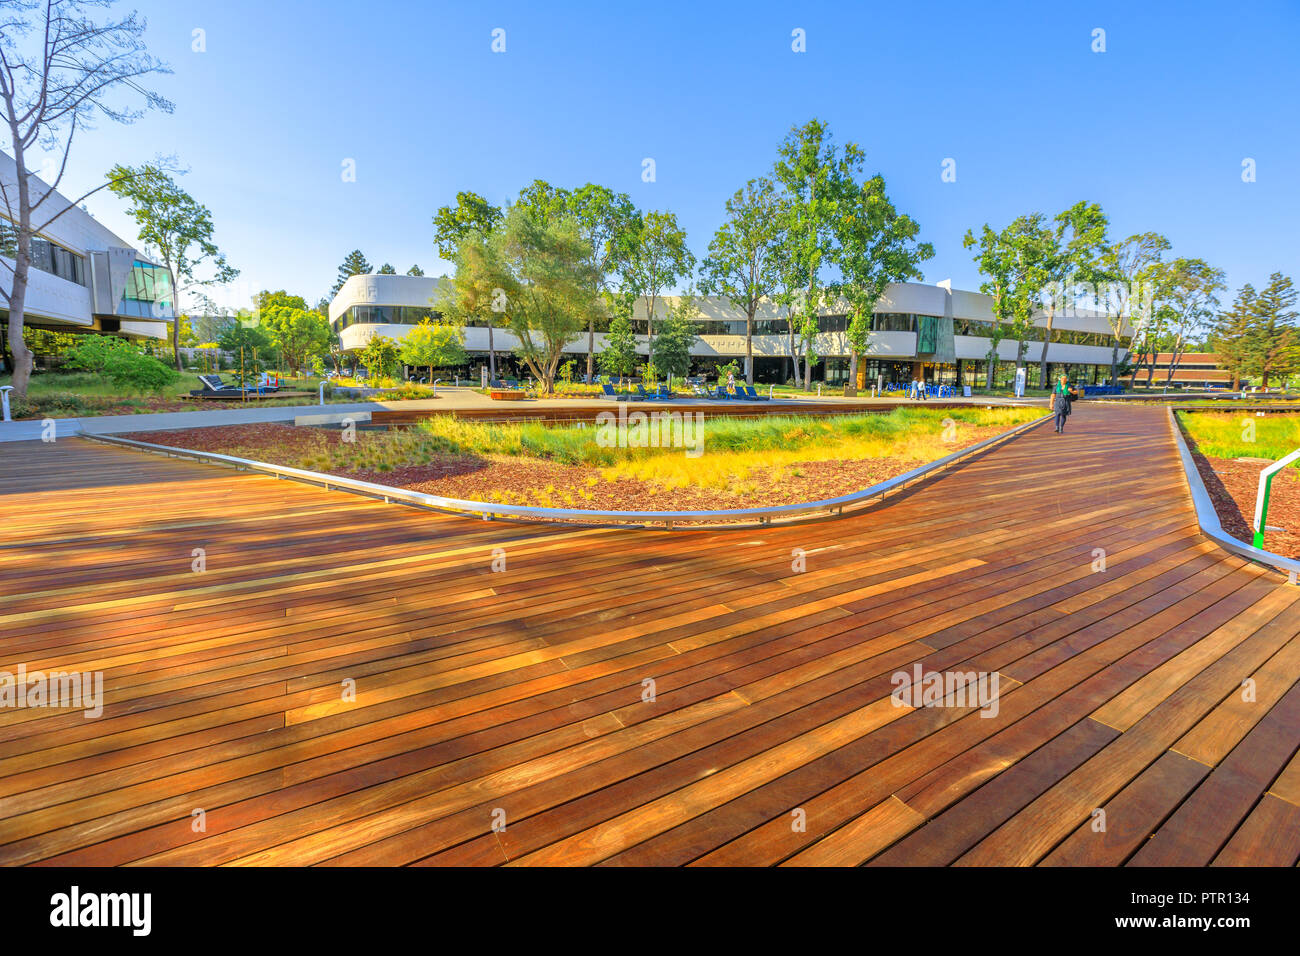 Mountain View, Kalifornien, Vereinigte Staaten - 13 August 2018: Neue Linkedin Corp Campus im Silicon Valley. Linkedin Headquarters ist ein Business- und beschäftigungsorientierte professionelles Social Network Service. Stockfoto